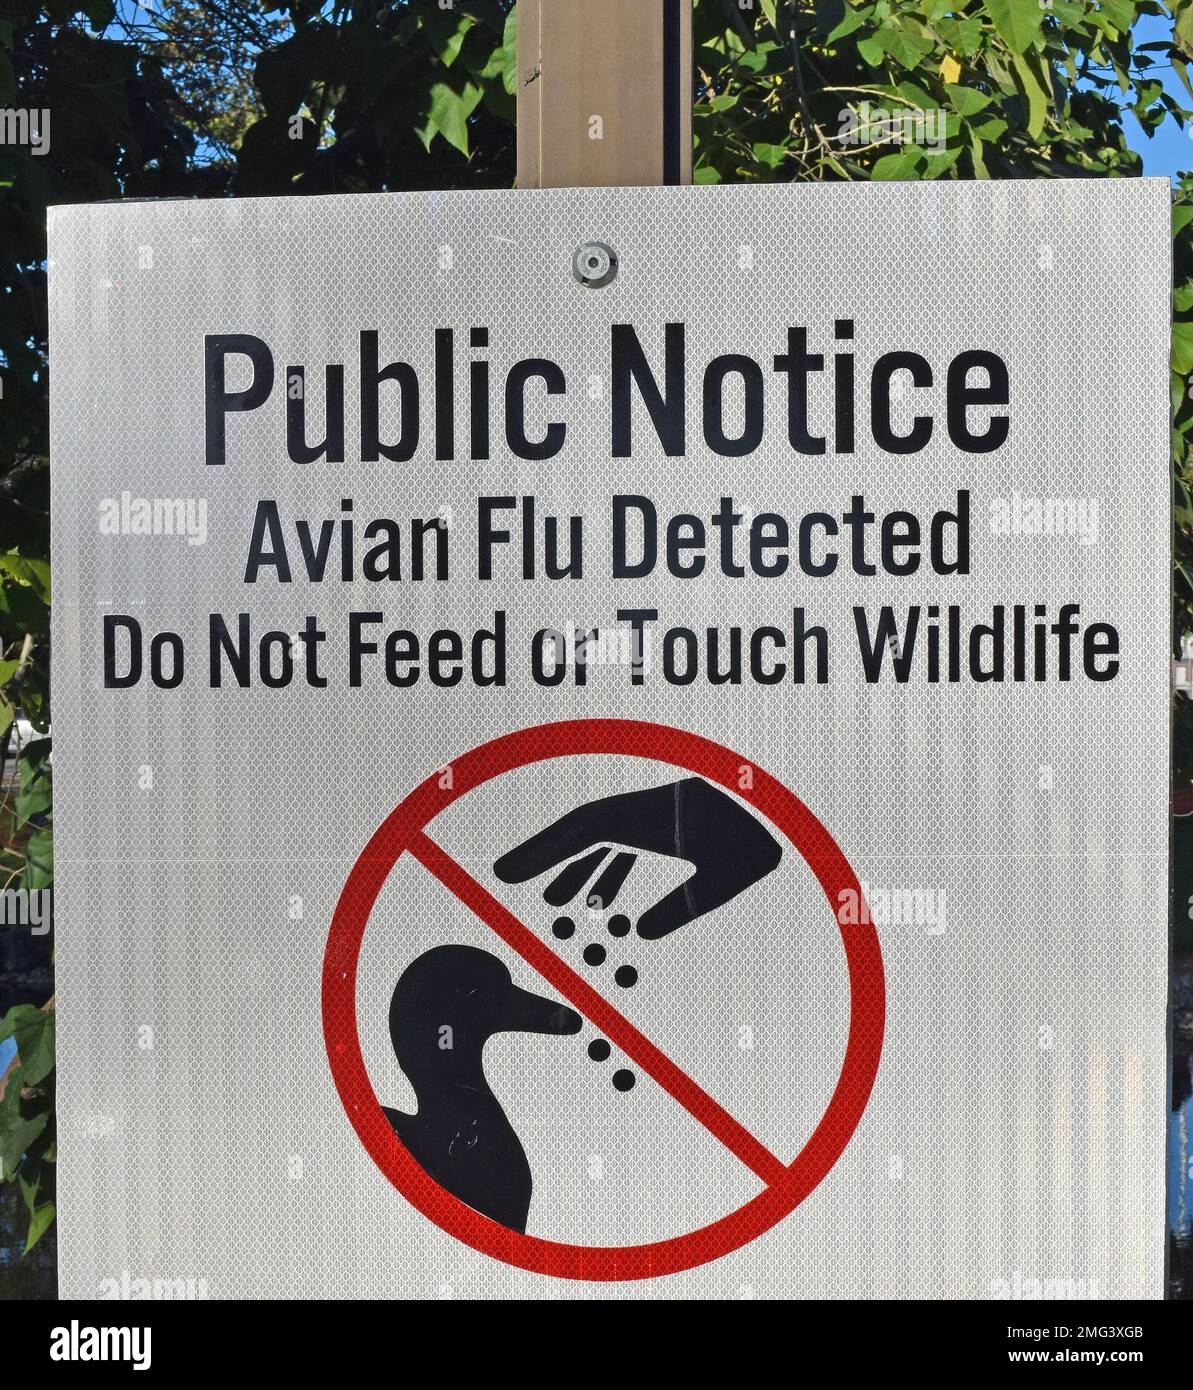 Rilevata influenza aviaria, si prega di non dare da mangiare o toccare animali selvatici, cartello di avviso pubblico presso un laghetto del parco di Union City Civic Center, California Foto Stock